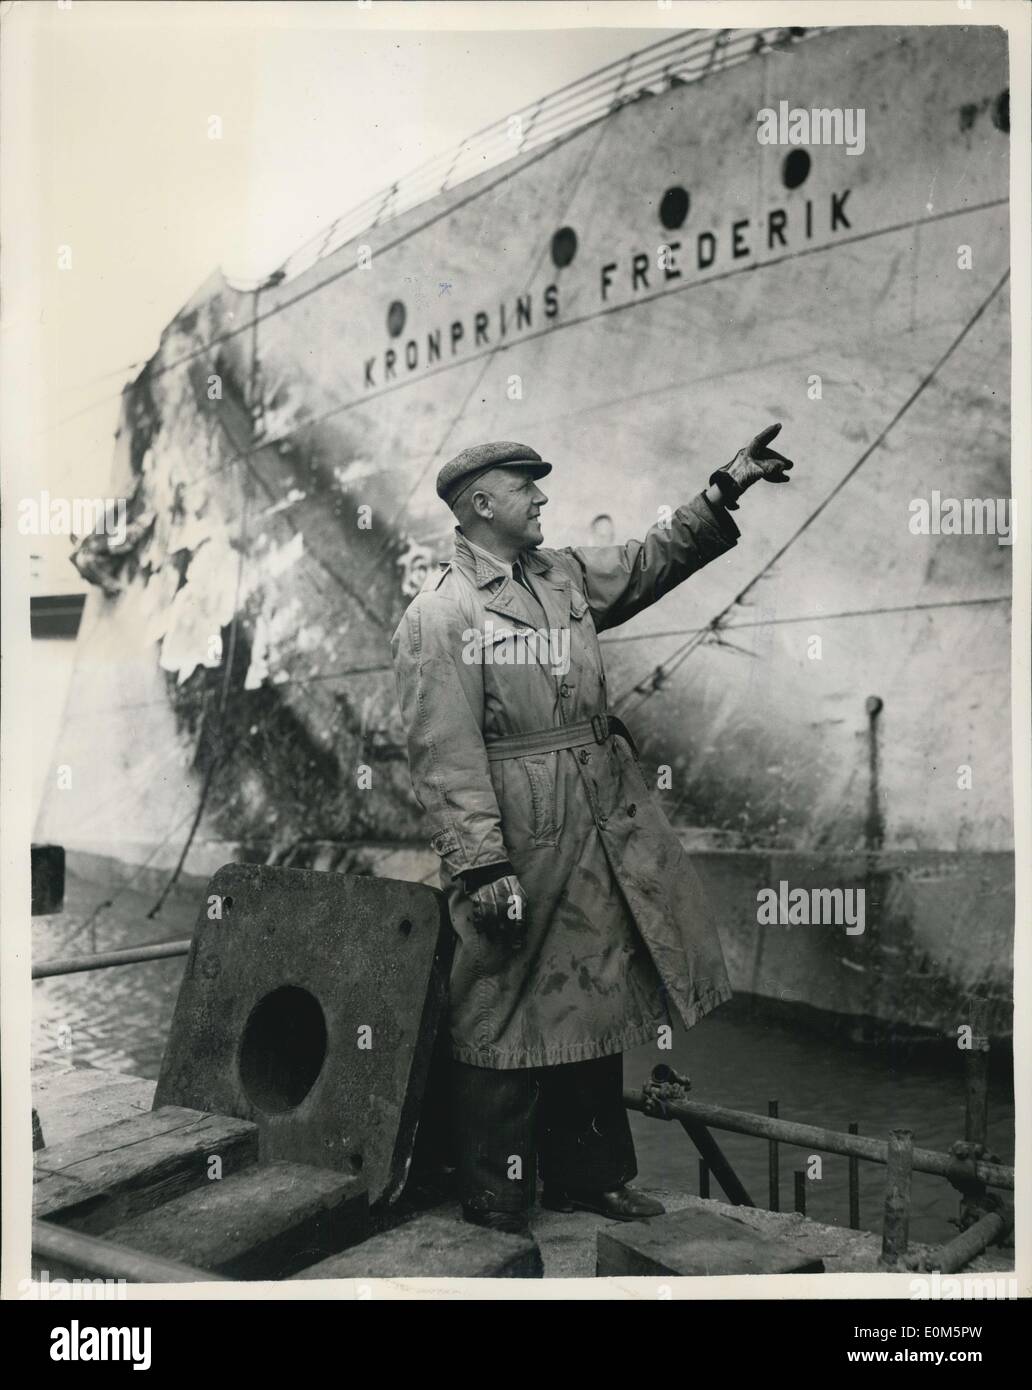 Agosto 26, 1953 - Il sollevamento del ''Kronprins Frederik'' sforzi per sollevare il sunken liner danese ''Kronprine Frederik'' che si rovesciò ed affondò dopo essere stata spazzata via dai fuoco a Harwirl, in aprile, vengono fatte oggi. Gli uomini di soccorso sono state lavorando sulla nave per mesi e sono iniziati i lavori di questo mornin a sollevarla. La foto mostra il cap. N.H. Lauridsen di Esbjerg, Danimarca-il capitano della nave quando ha preso fuoco-visto guardando oltre il ''Kronprins Frederik'' oggi nel corso di operazioni di sollevamento a Harwich. Foto Stock